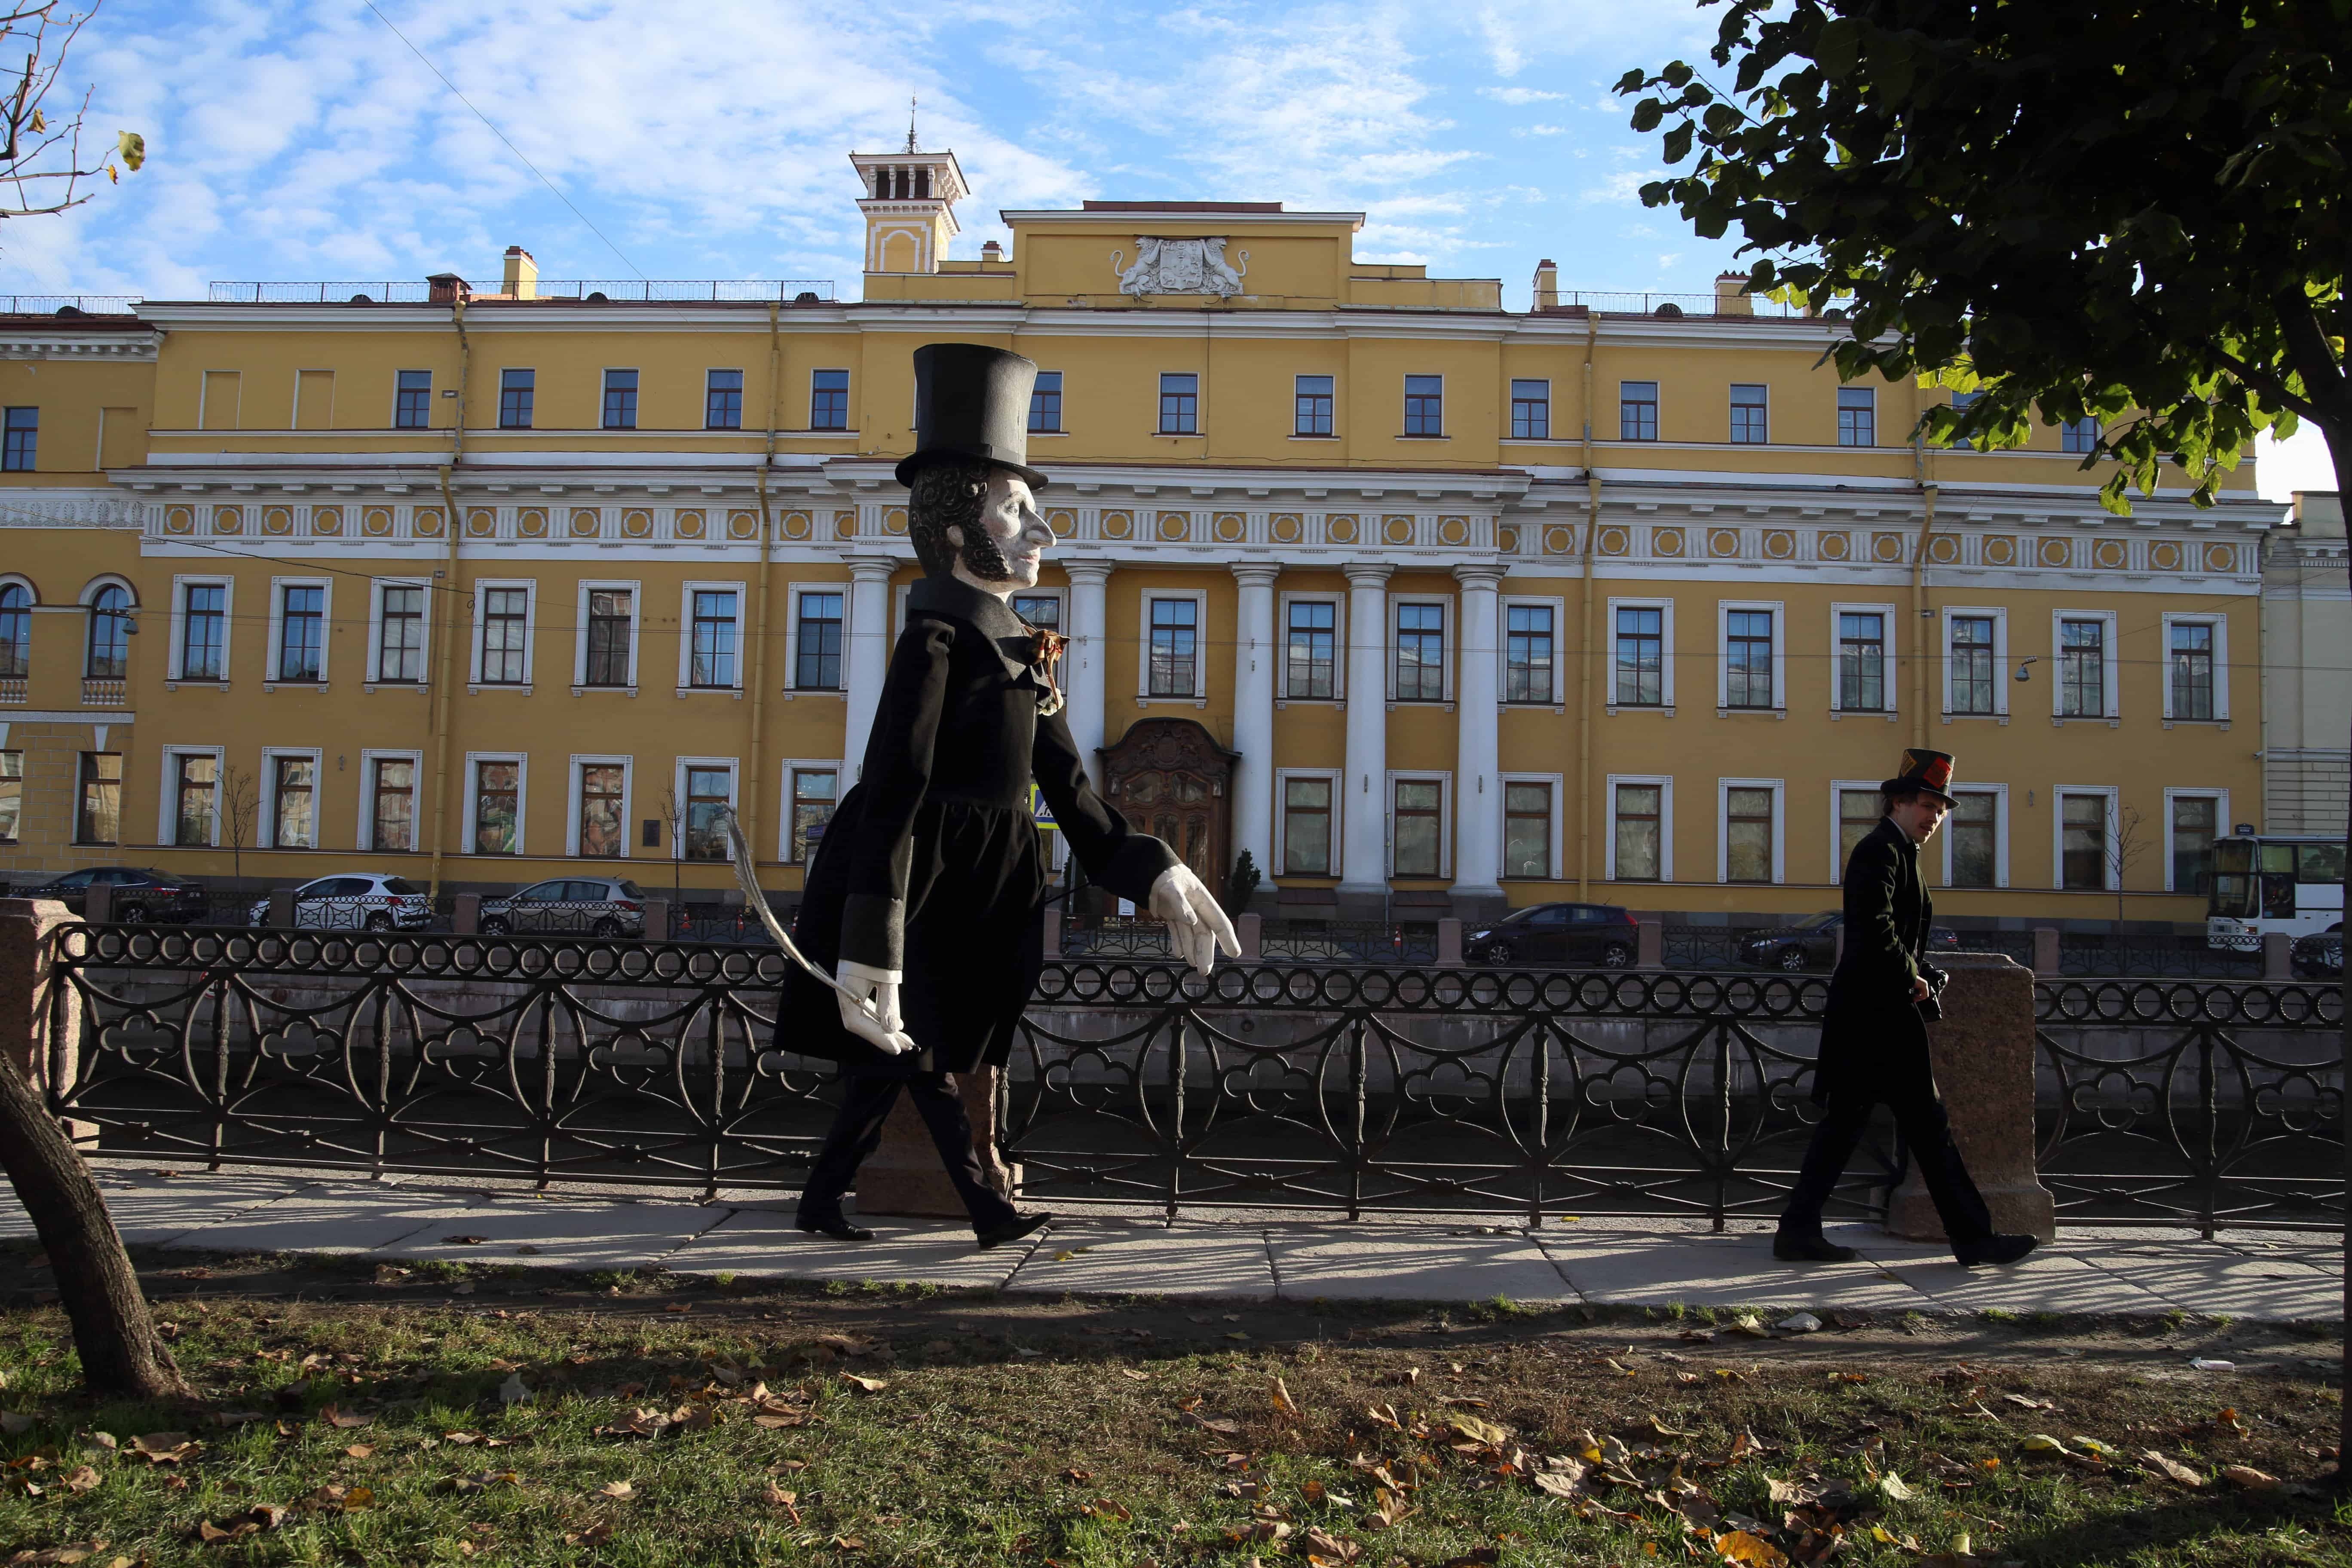 Пушкин был лешим и не погиб на дуэли: где миф, а где правда о главном поэте России?